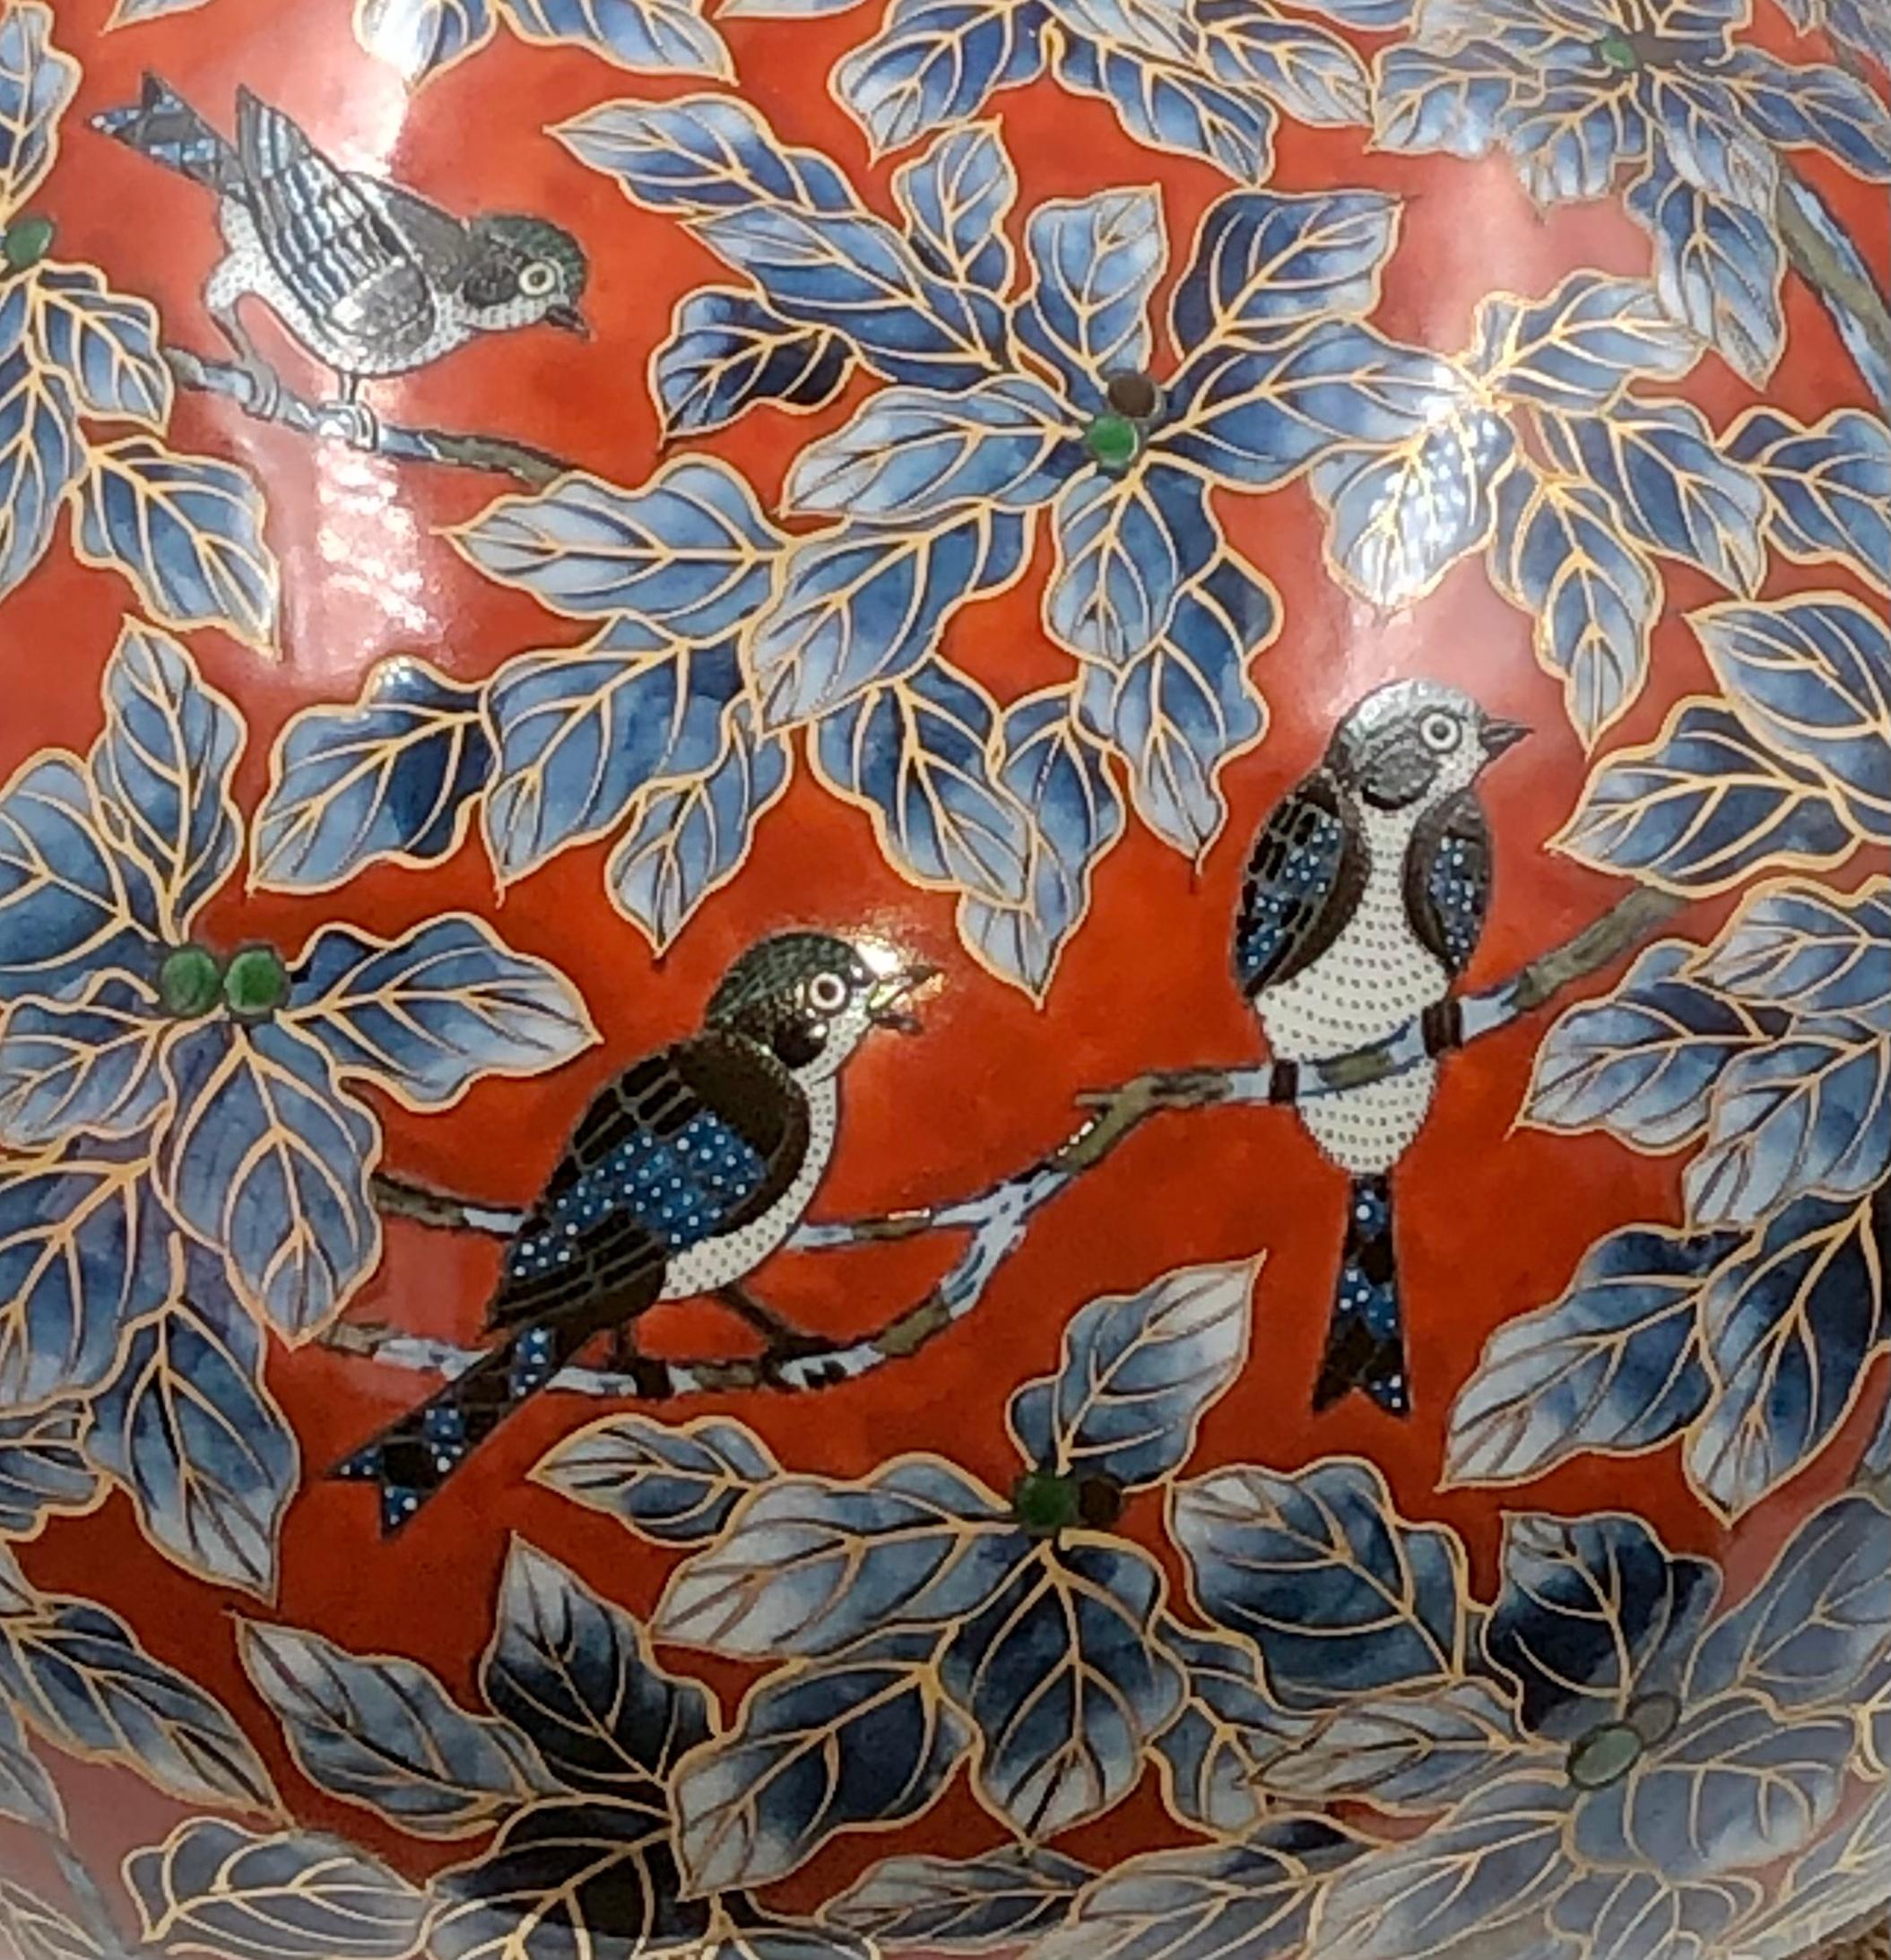 Außergewöhnliche zeitgenössische japanische Porzellanvase in Museumsqualität, aufwändig vergoldet und handbemalt in atemberaubendem Blau und Rot auf einem schönen kugelförmigen Korpus. Ein signiertes Meisterwerk des Porzellankünstlers der zweiten